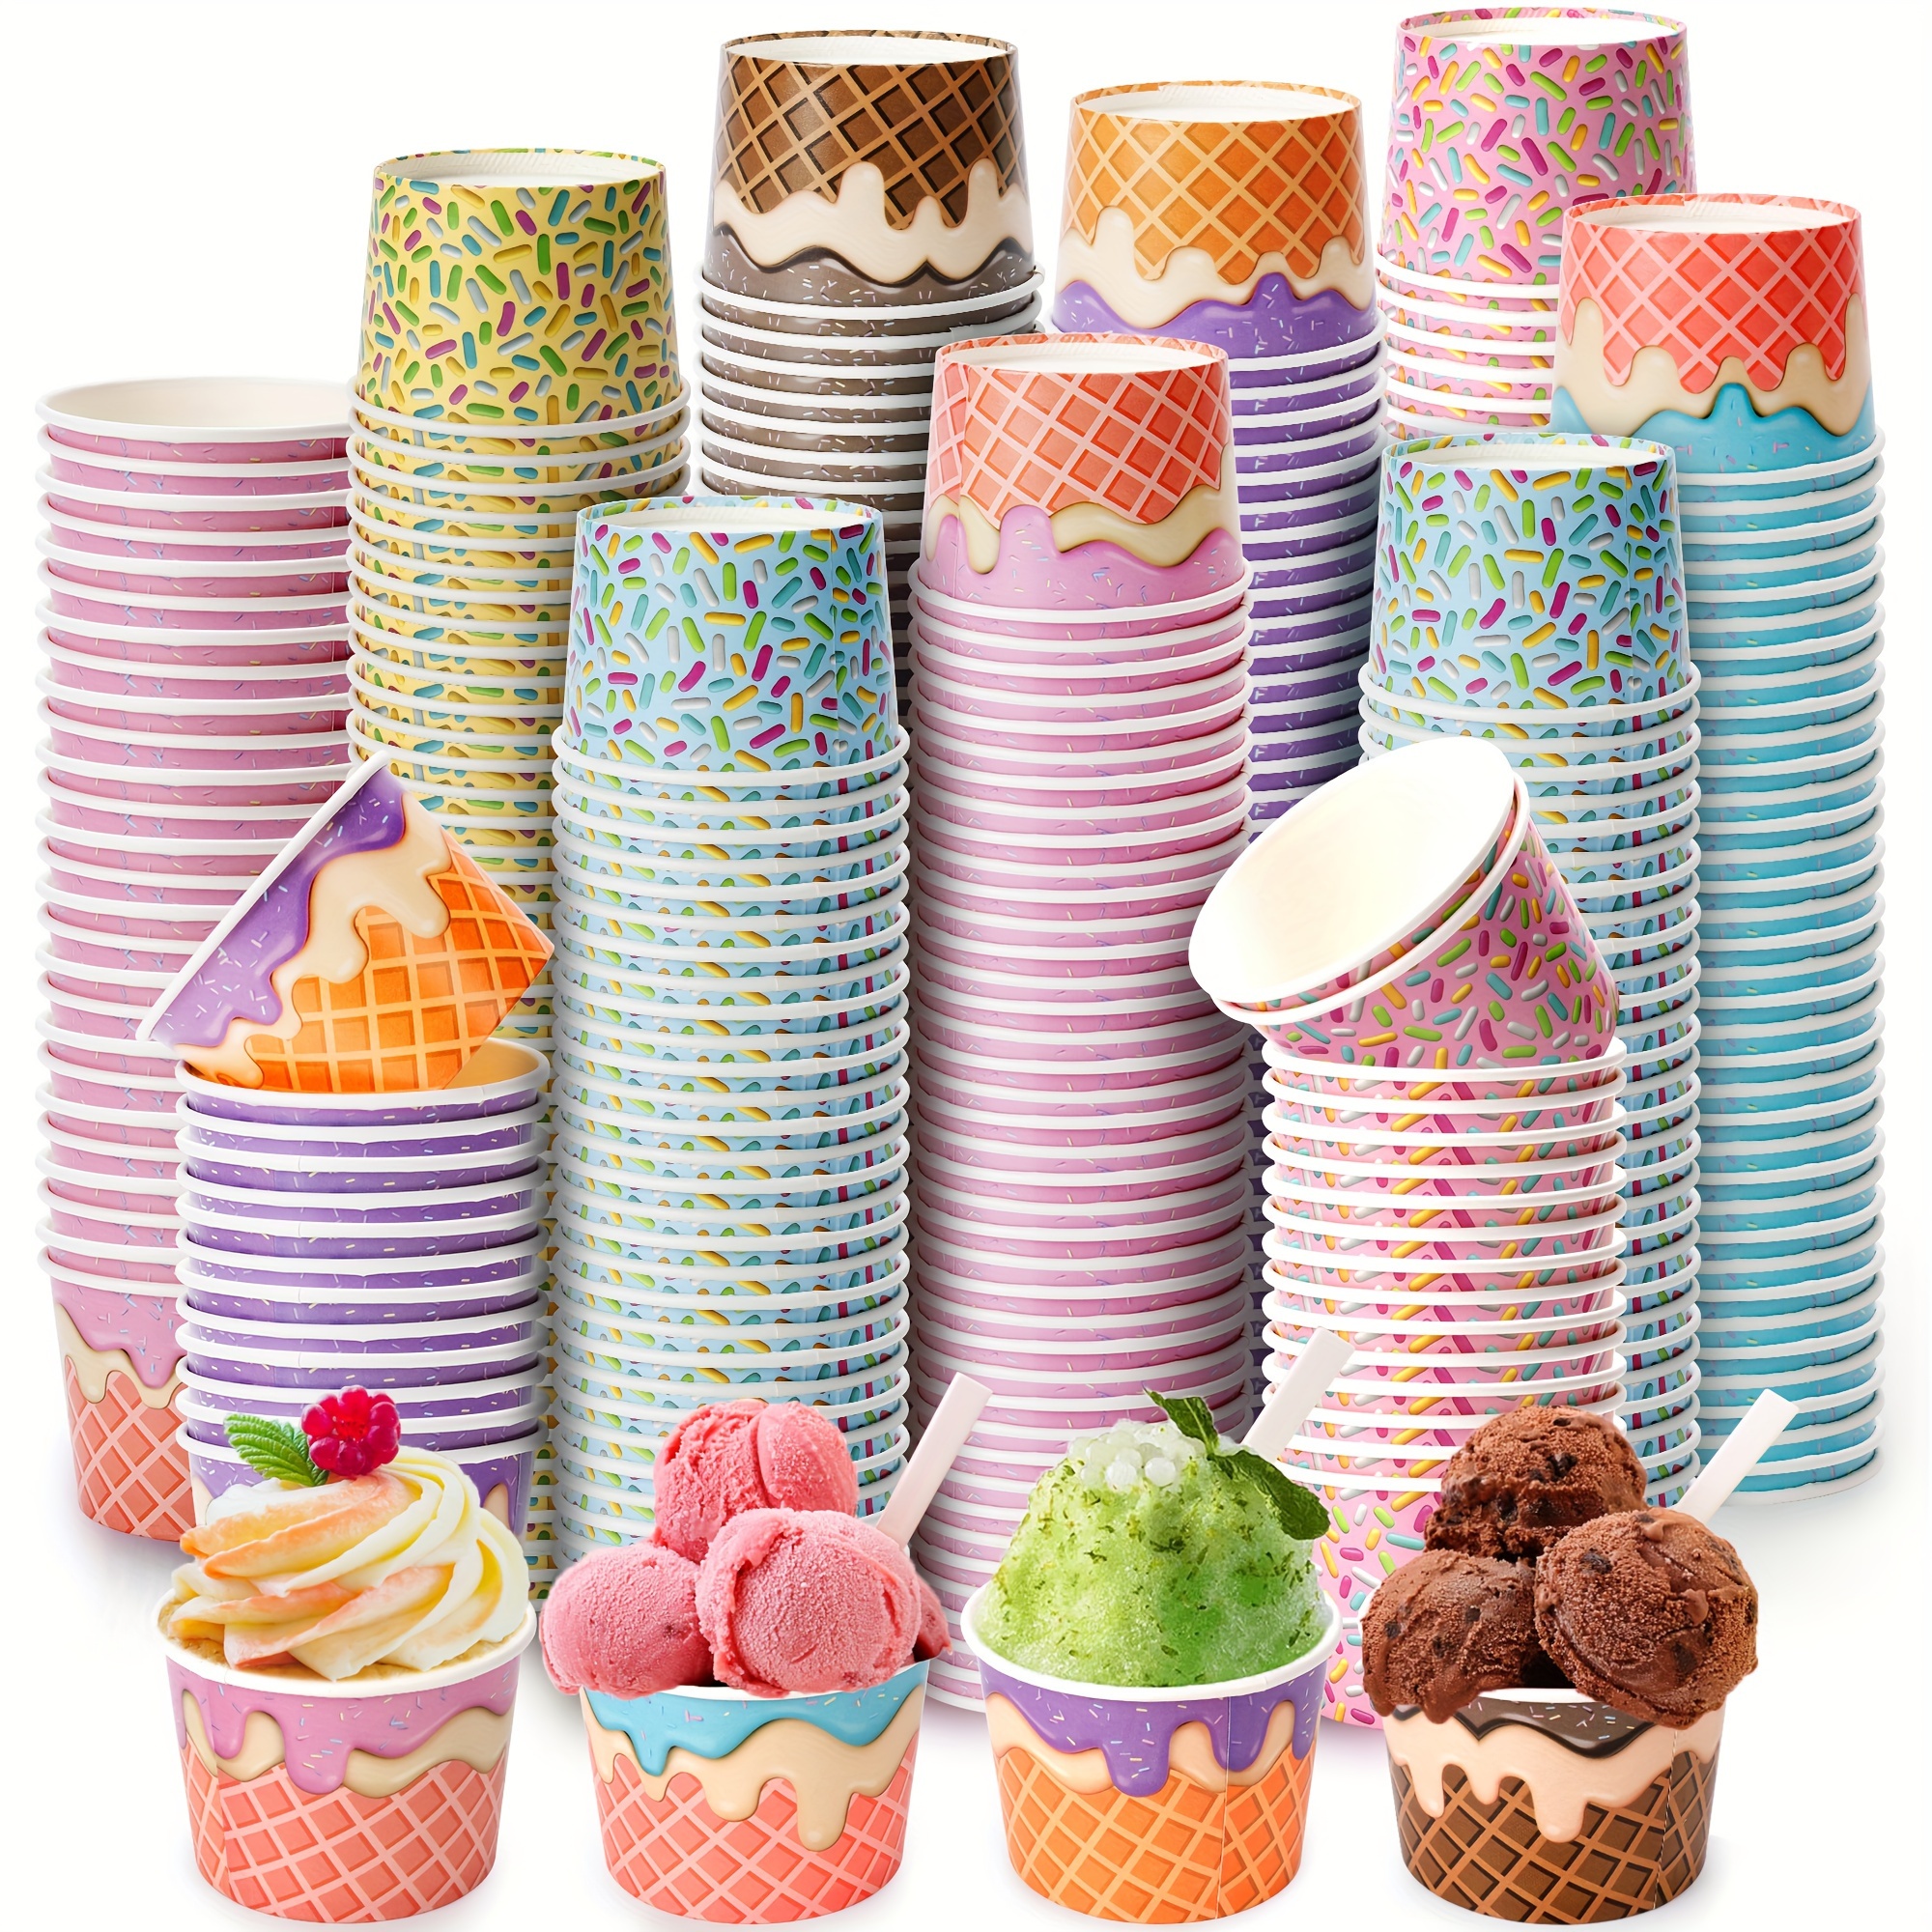 Personalized Ice Cream Cones Retro Ice Cream Bowl